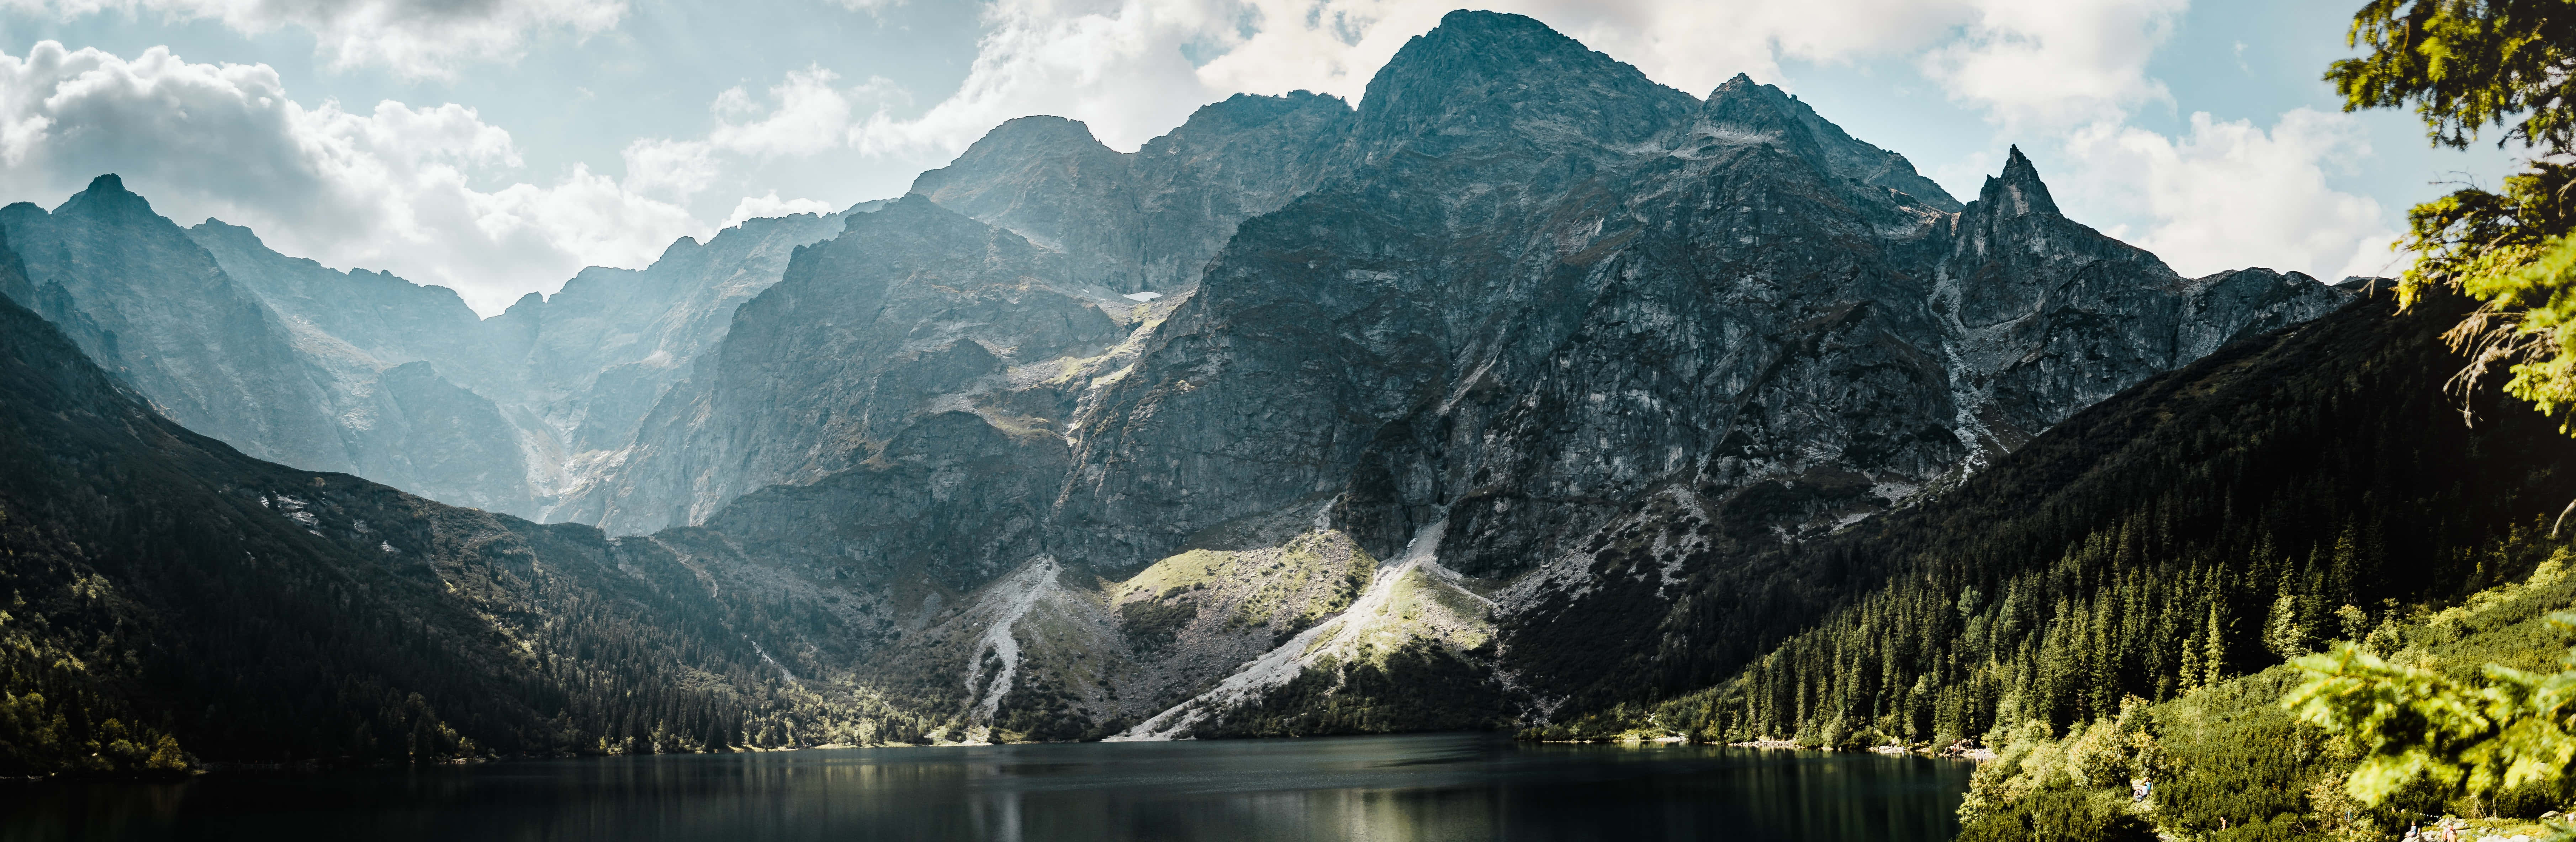 Einegebirgskette Mit Einem See Im Hintergrund Wallpaper